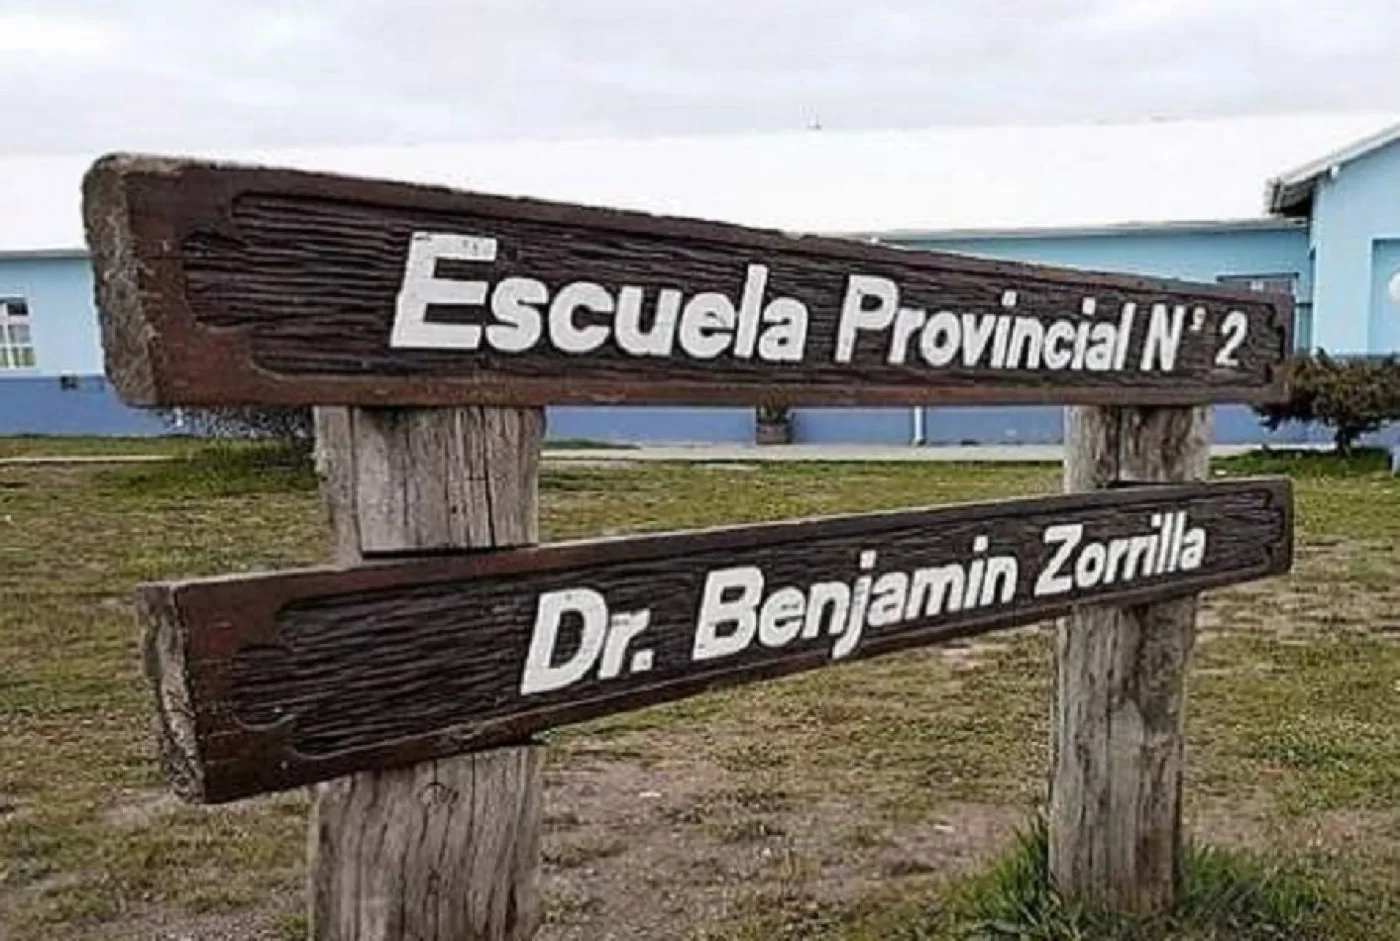 Escuela Provincial N°2 Dr Benjamín Zorrilla